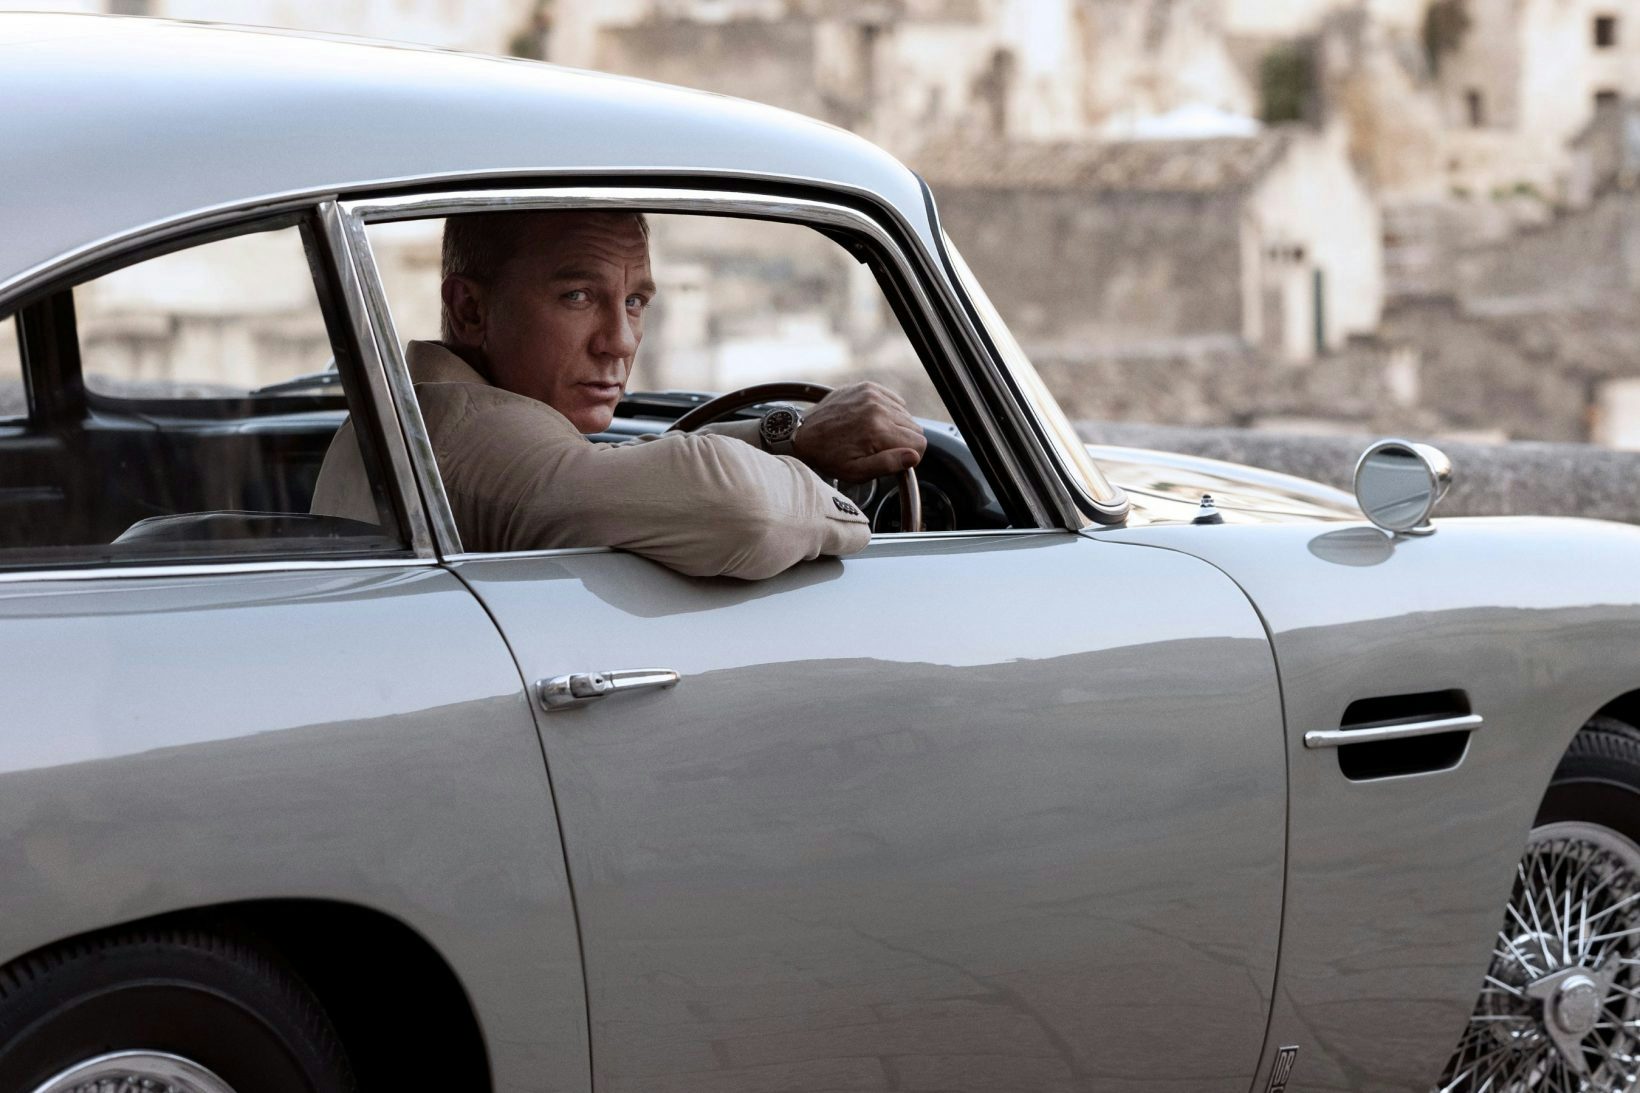 Le James Bond «No Time to Die» enfin sur les écrans. Comment les partenaires se sont-ils adaptés?